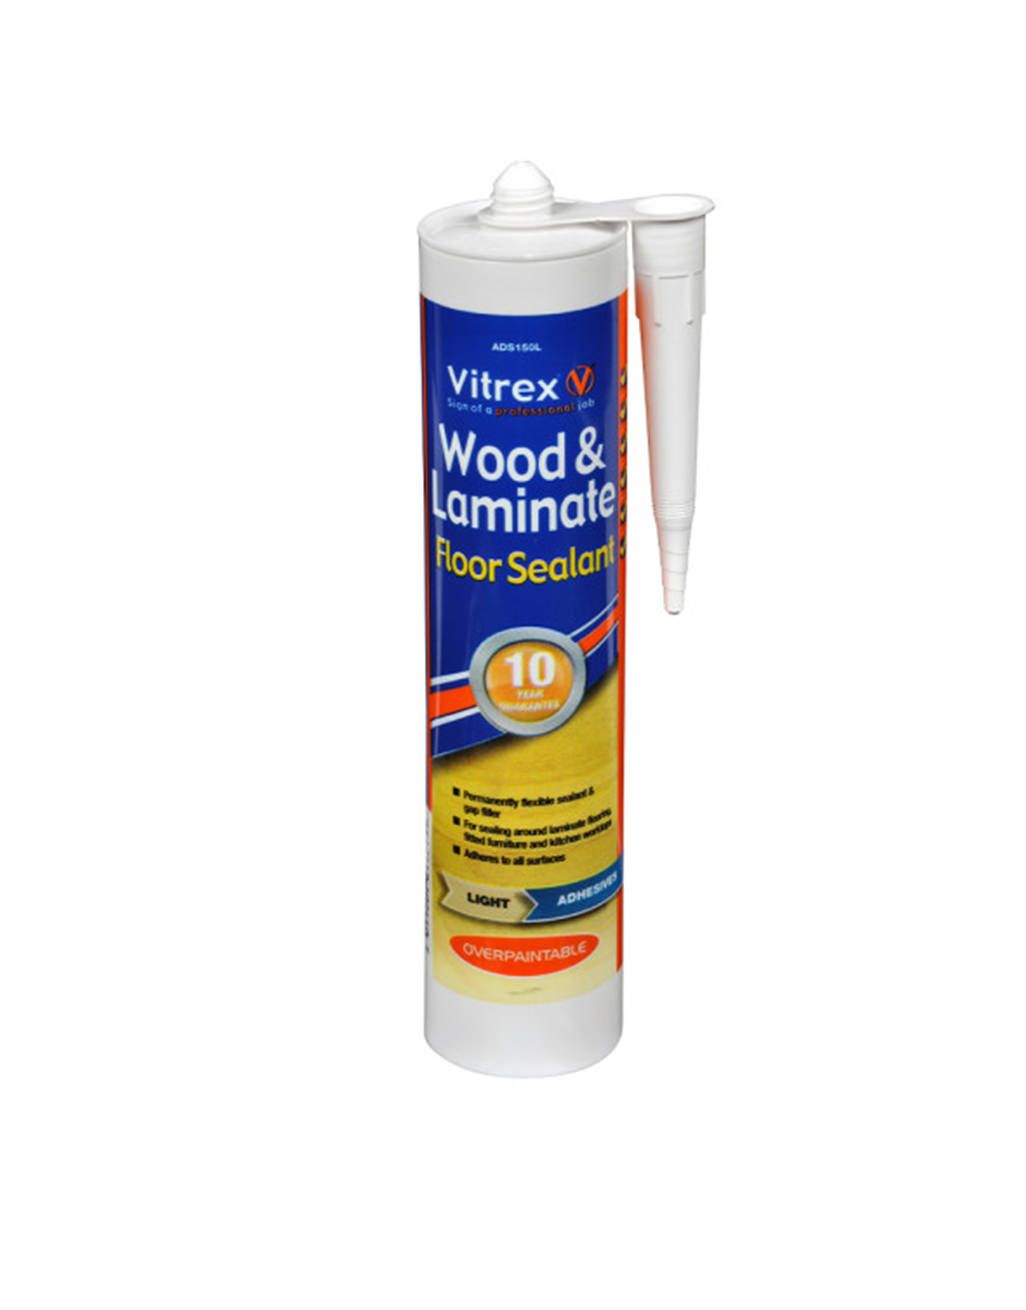 Wood & Laminate Floor Sealant - Light 1